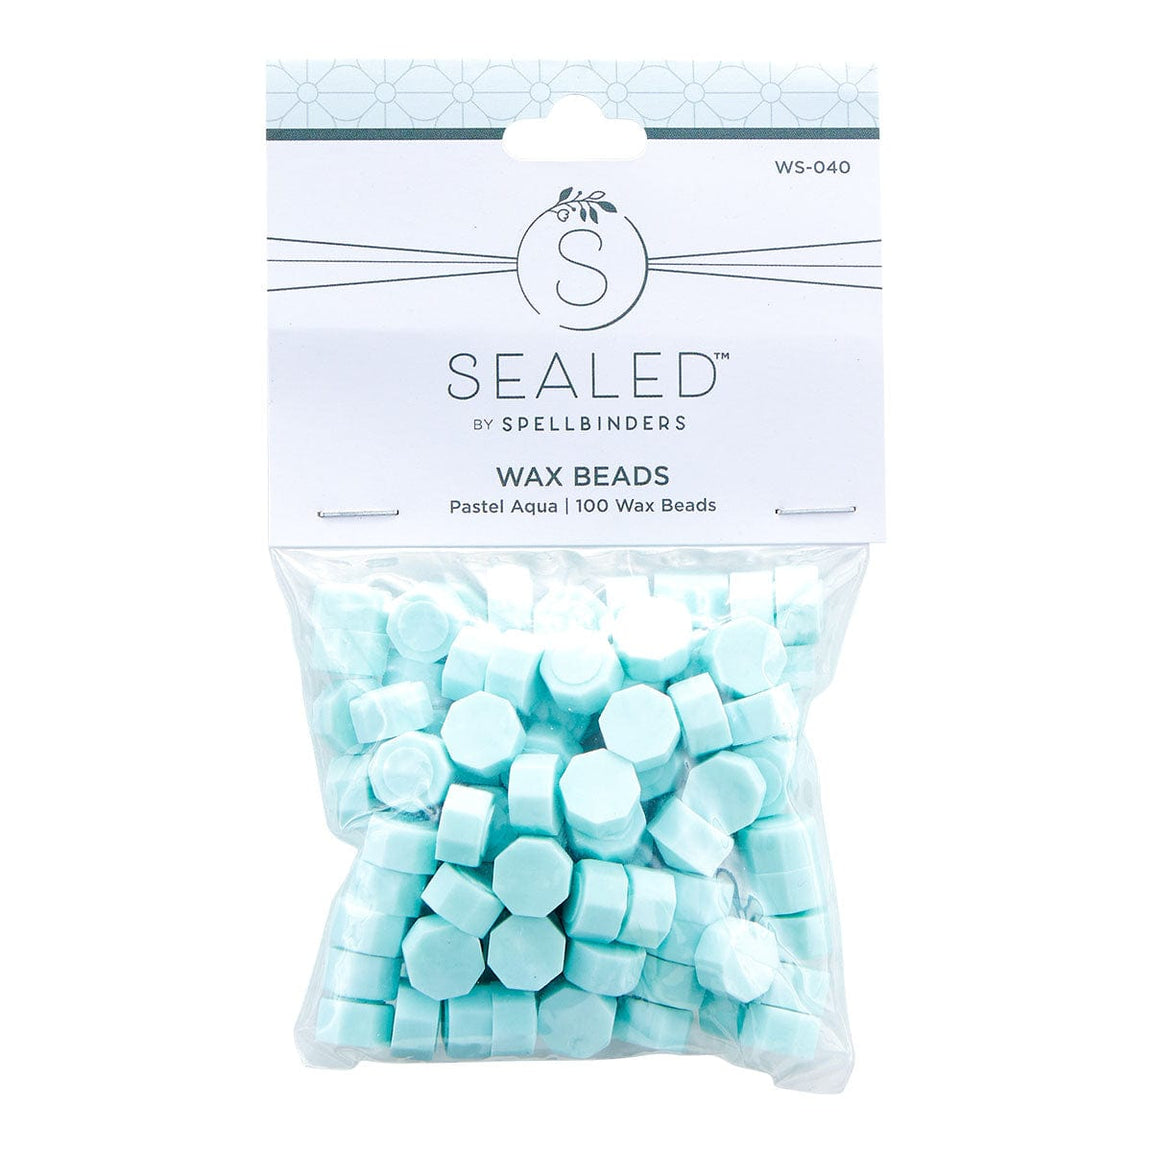 Spellbinders Pastel Aqua Wax Beads - Sealed by Spellbinders Collection